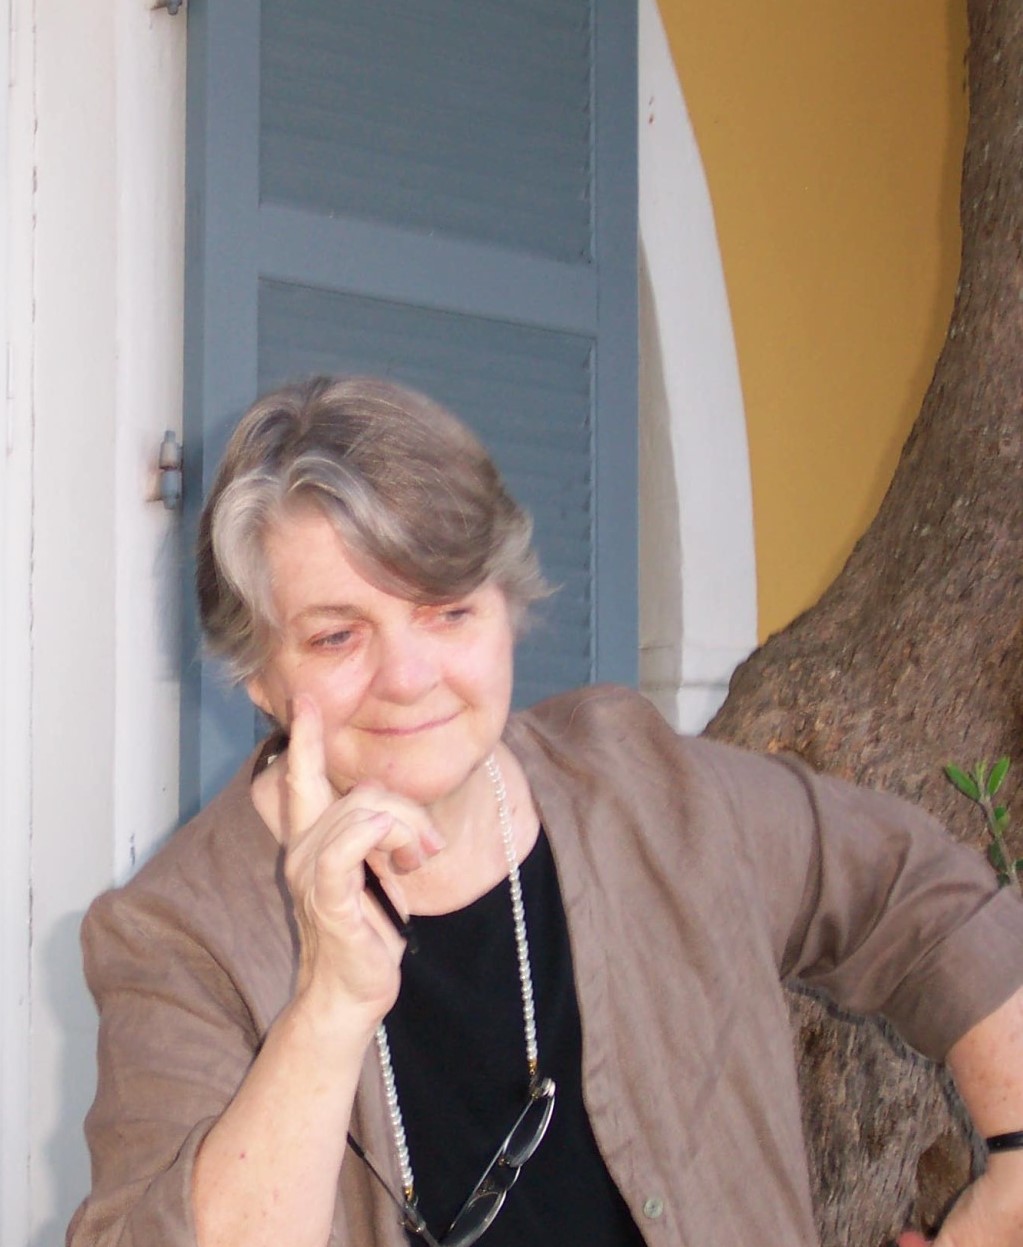 Barbara Sher, outdoors at retreat, thinking